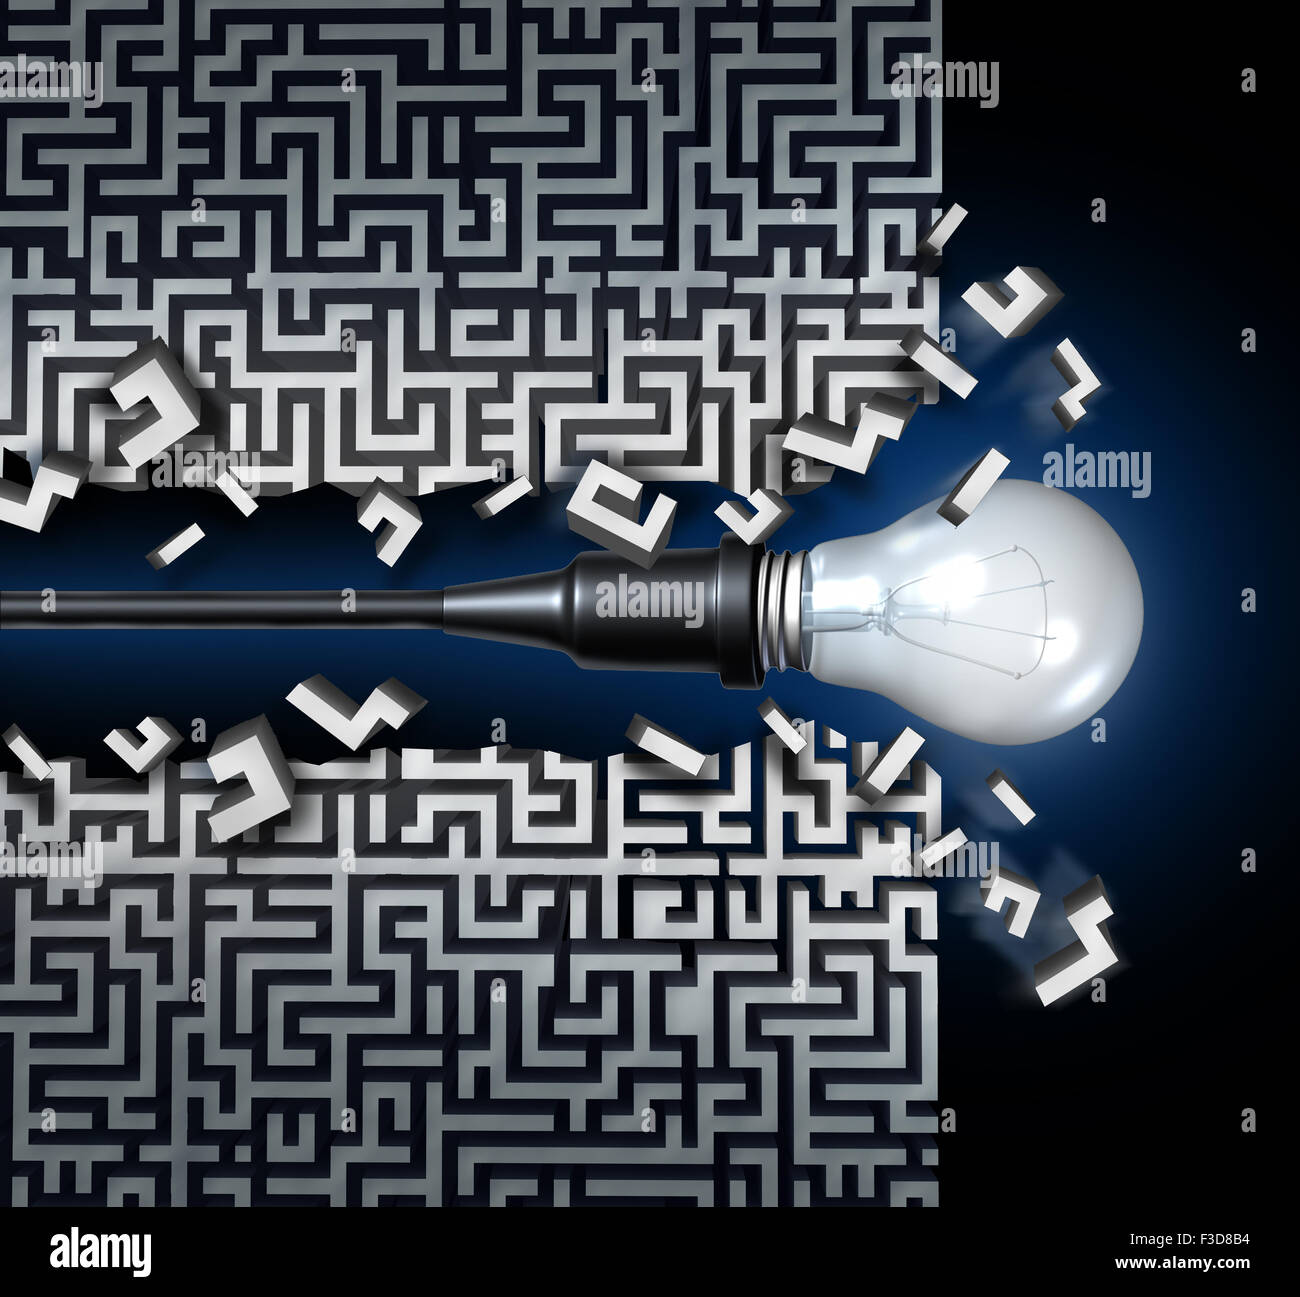 Idée innovante concept de solutions et de nouvelles affaires en tant que symbole de la pensée une ampoule briser dans un labyrinthe labyrinthe ou comme une icône pour l'innovation et l'invention. Banque D'Images